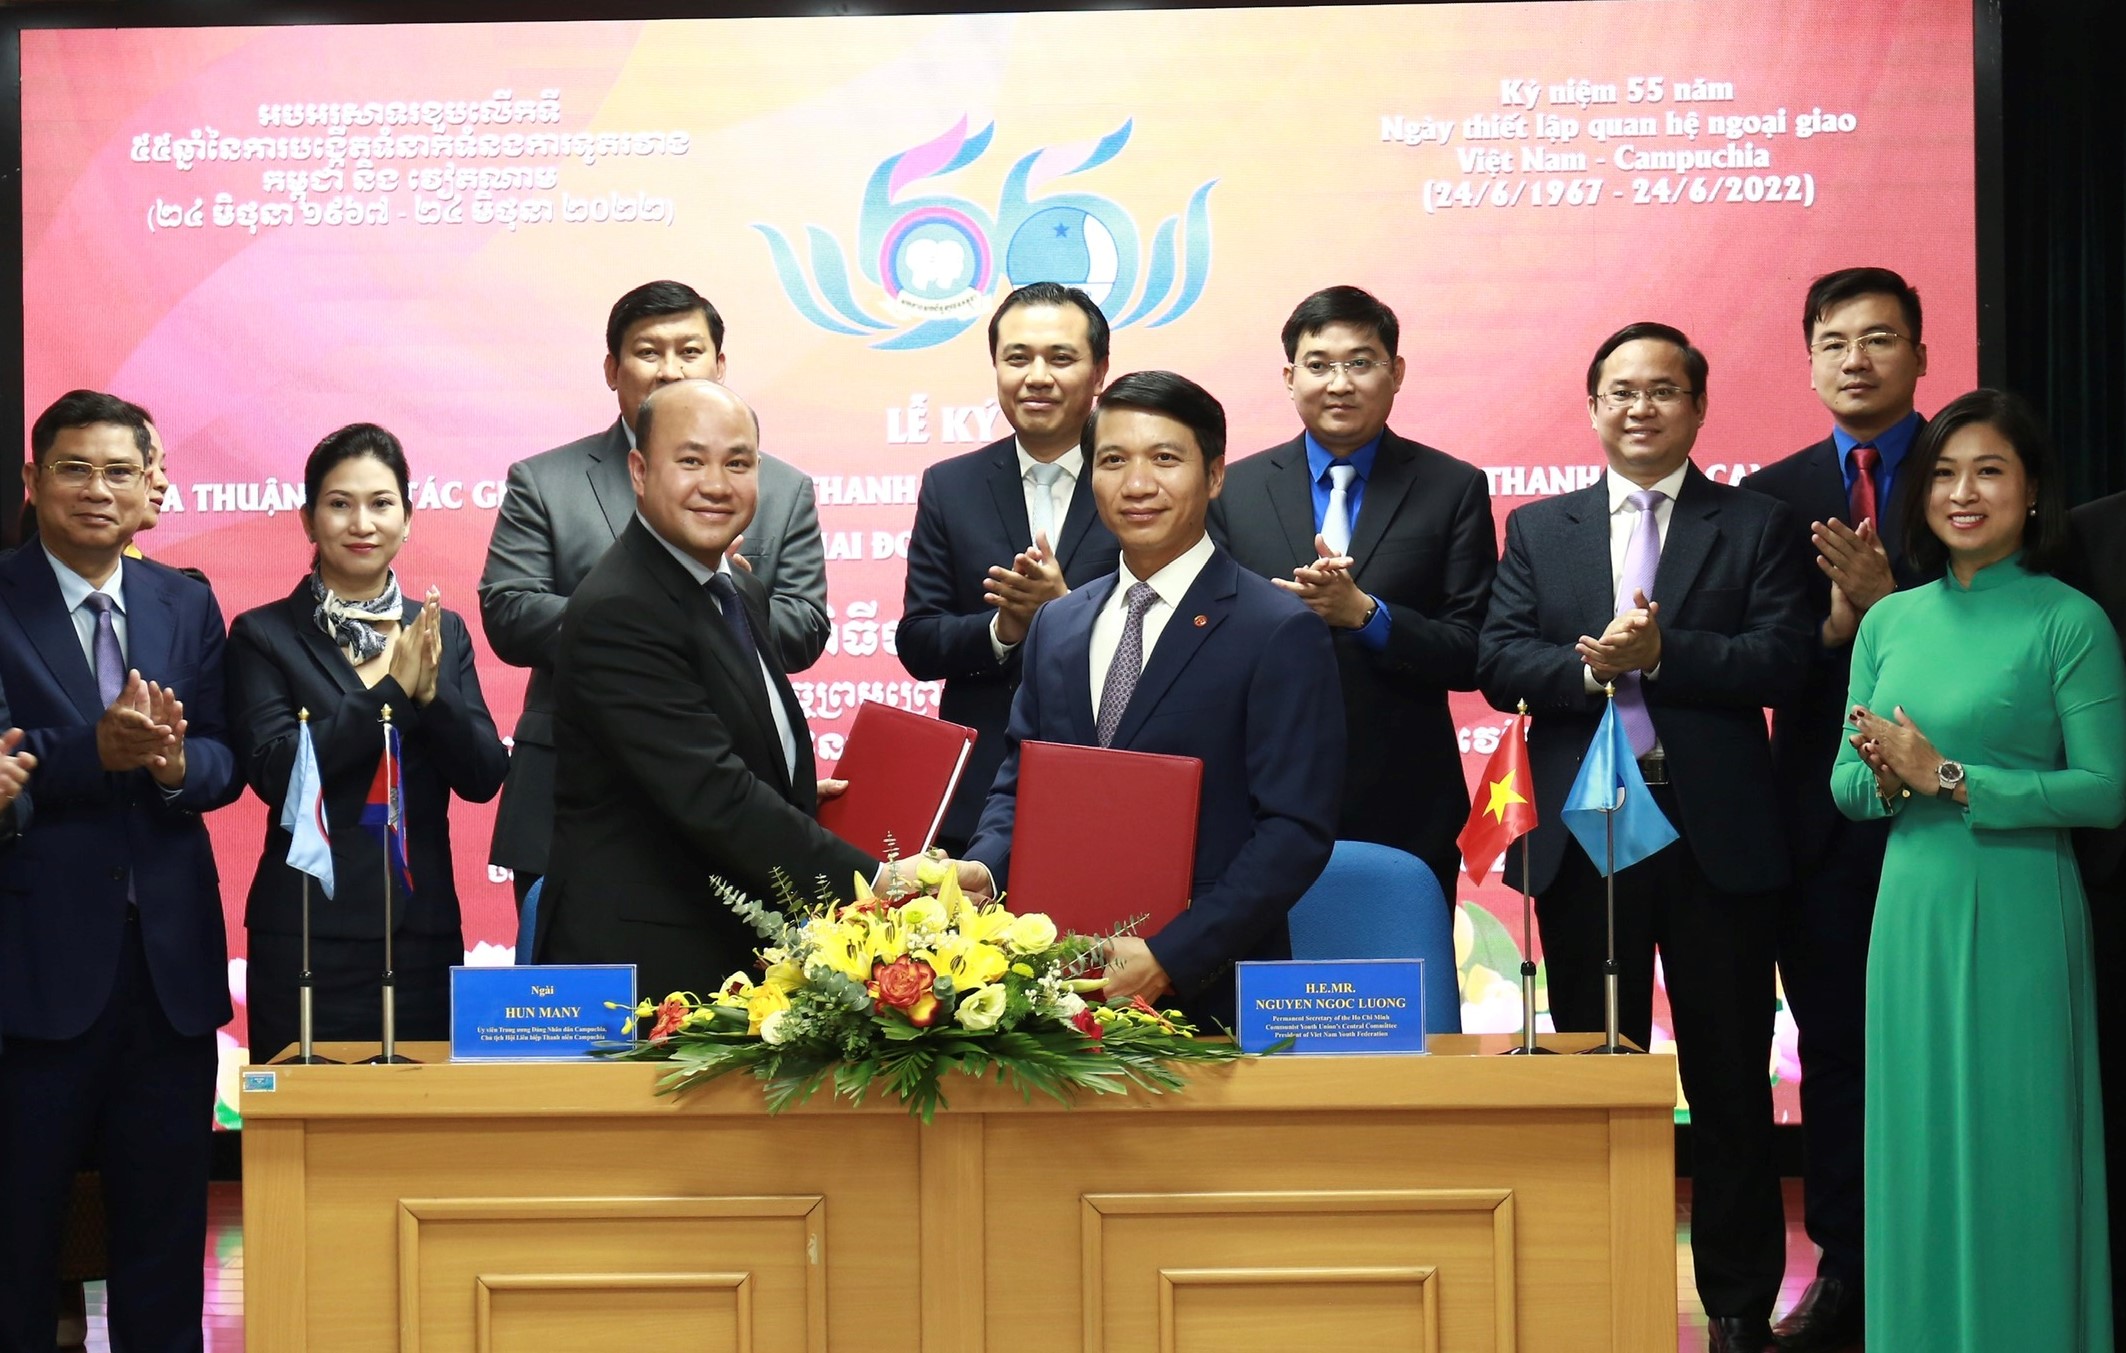 Mở ra lịch sử, cơ hội mới cho Hội LHTN và thanh niên Việt Nam - Campuchia